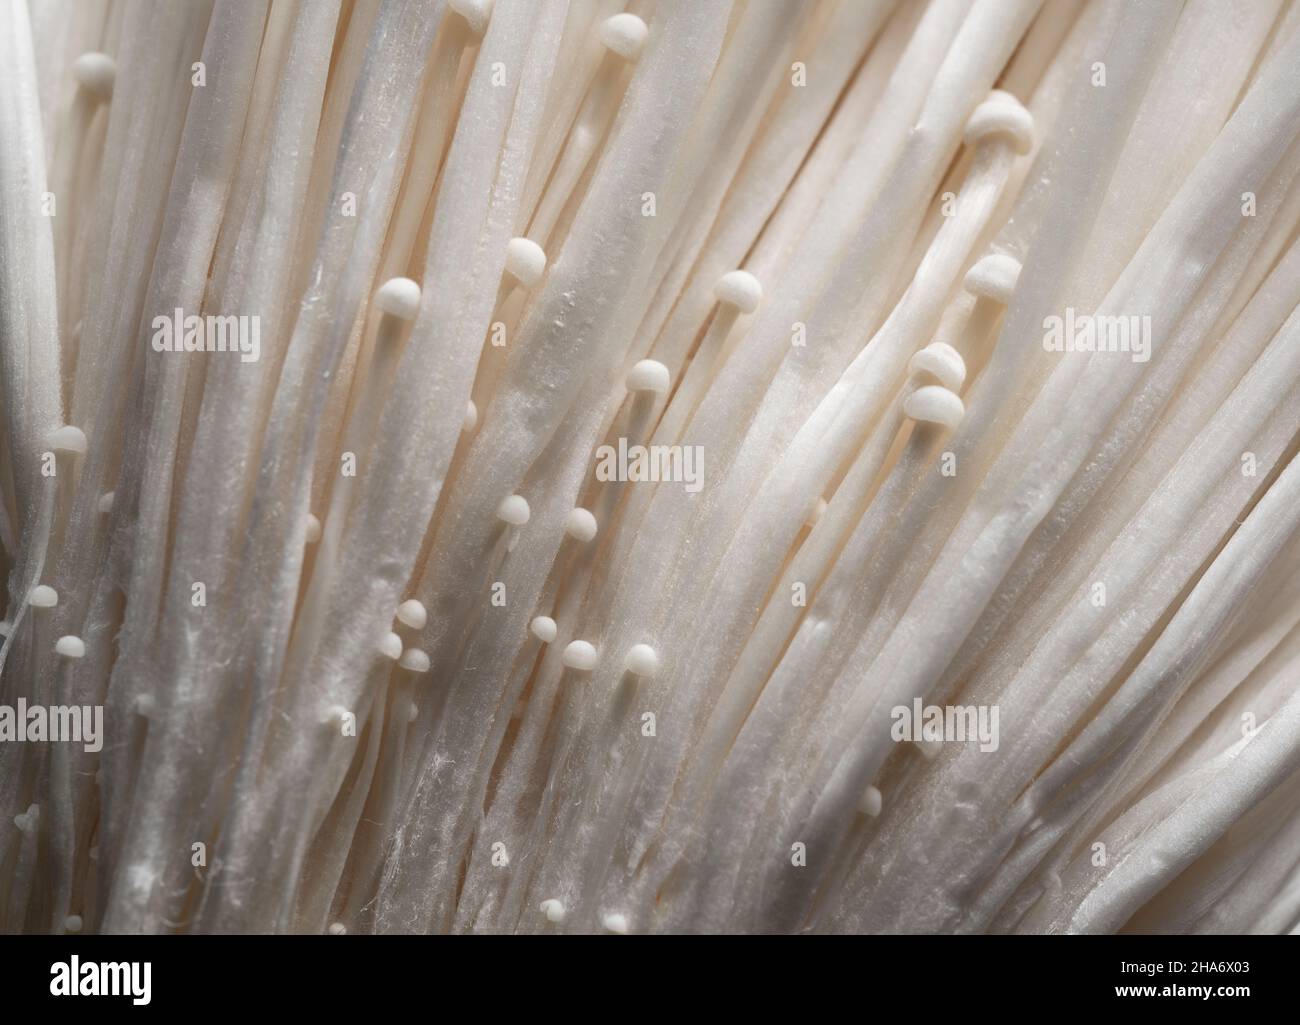 Primo piano dei funghi Enoki sullo schermo. Grafica web sfondi funghi Foto Stock